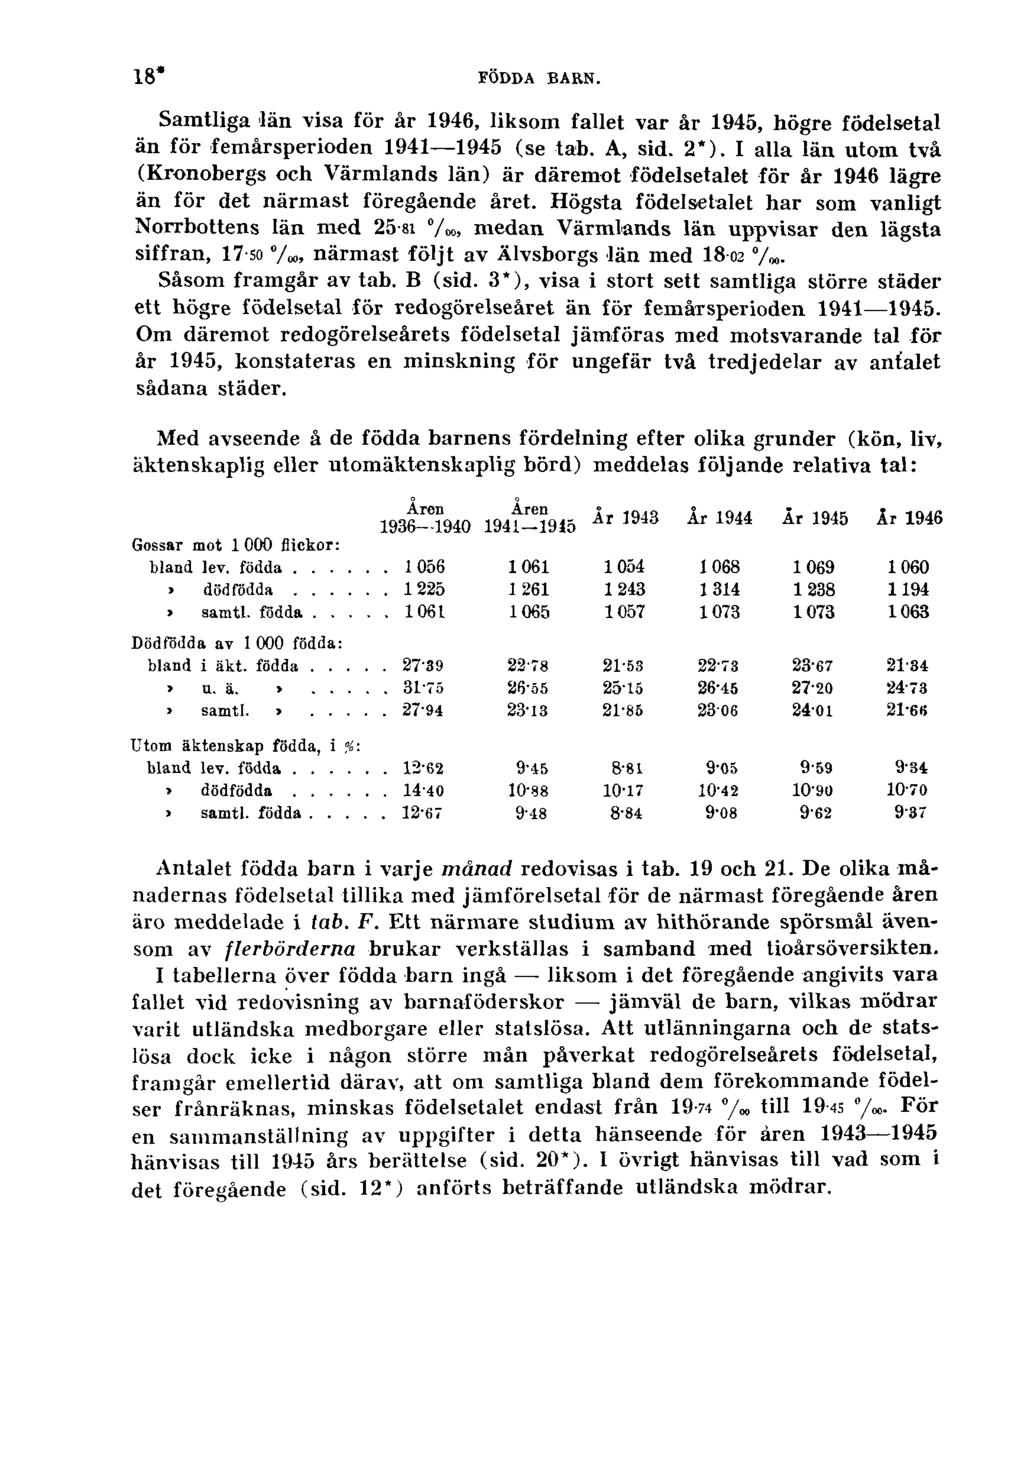 18* FÖDDA BARN. Samtliga län visa för år 1946, liksom fallet var år 1945, högre födelsetal än för femårsperioden 1941 1945 (se tab. A, sid. 2*).